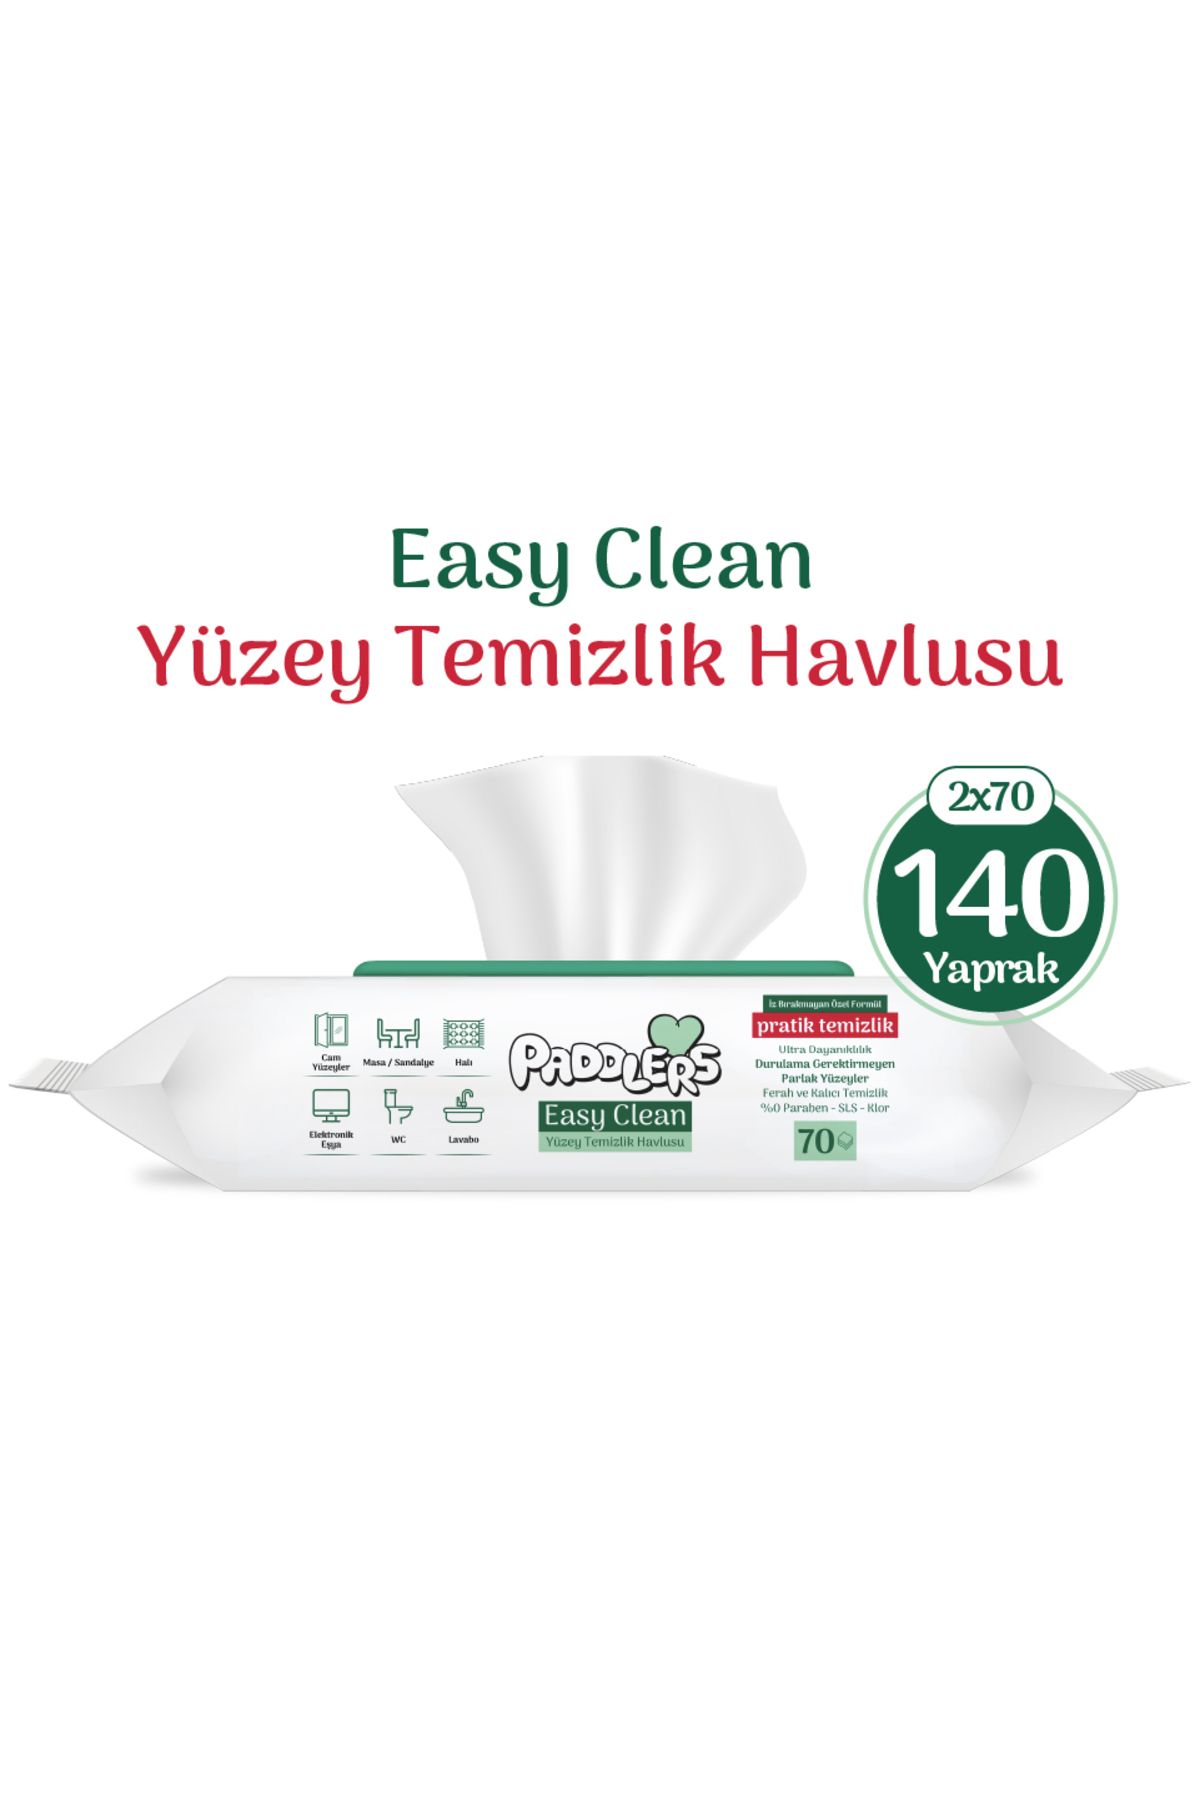 Paddlers Easy Clean Beyaz Sabun Katkılı Yüzey temizlik Havlusu 2x70 (140 Yaprak)